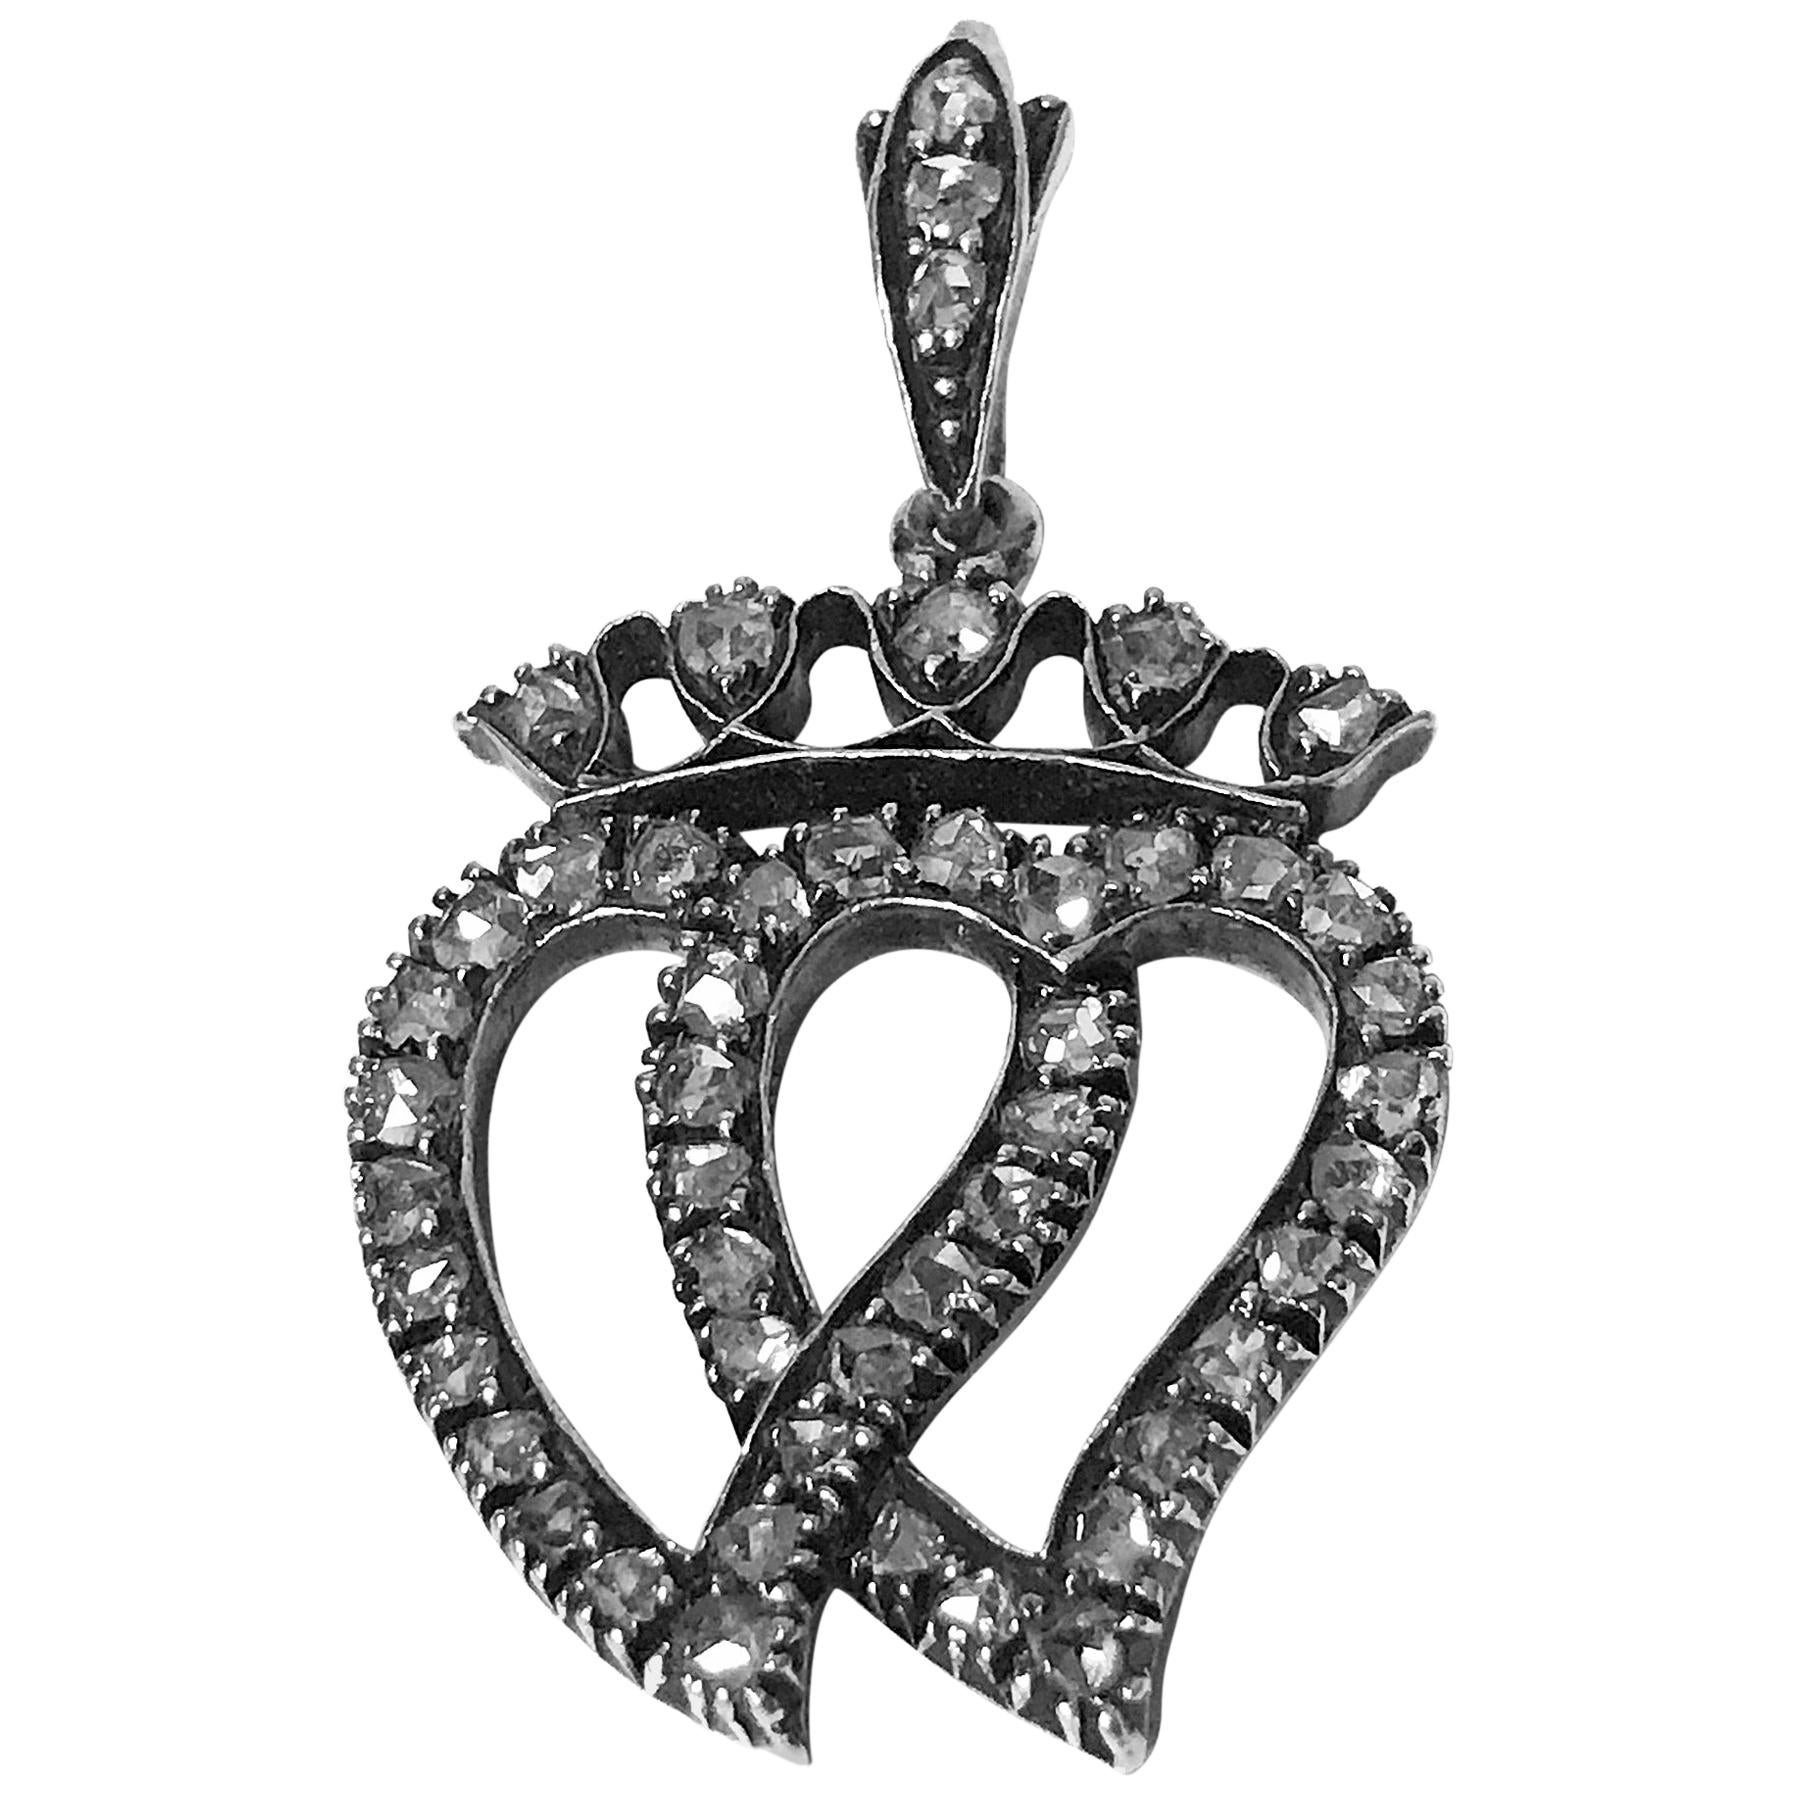 Antique Rose Cut Diamond Pendant, circa 1850